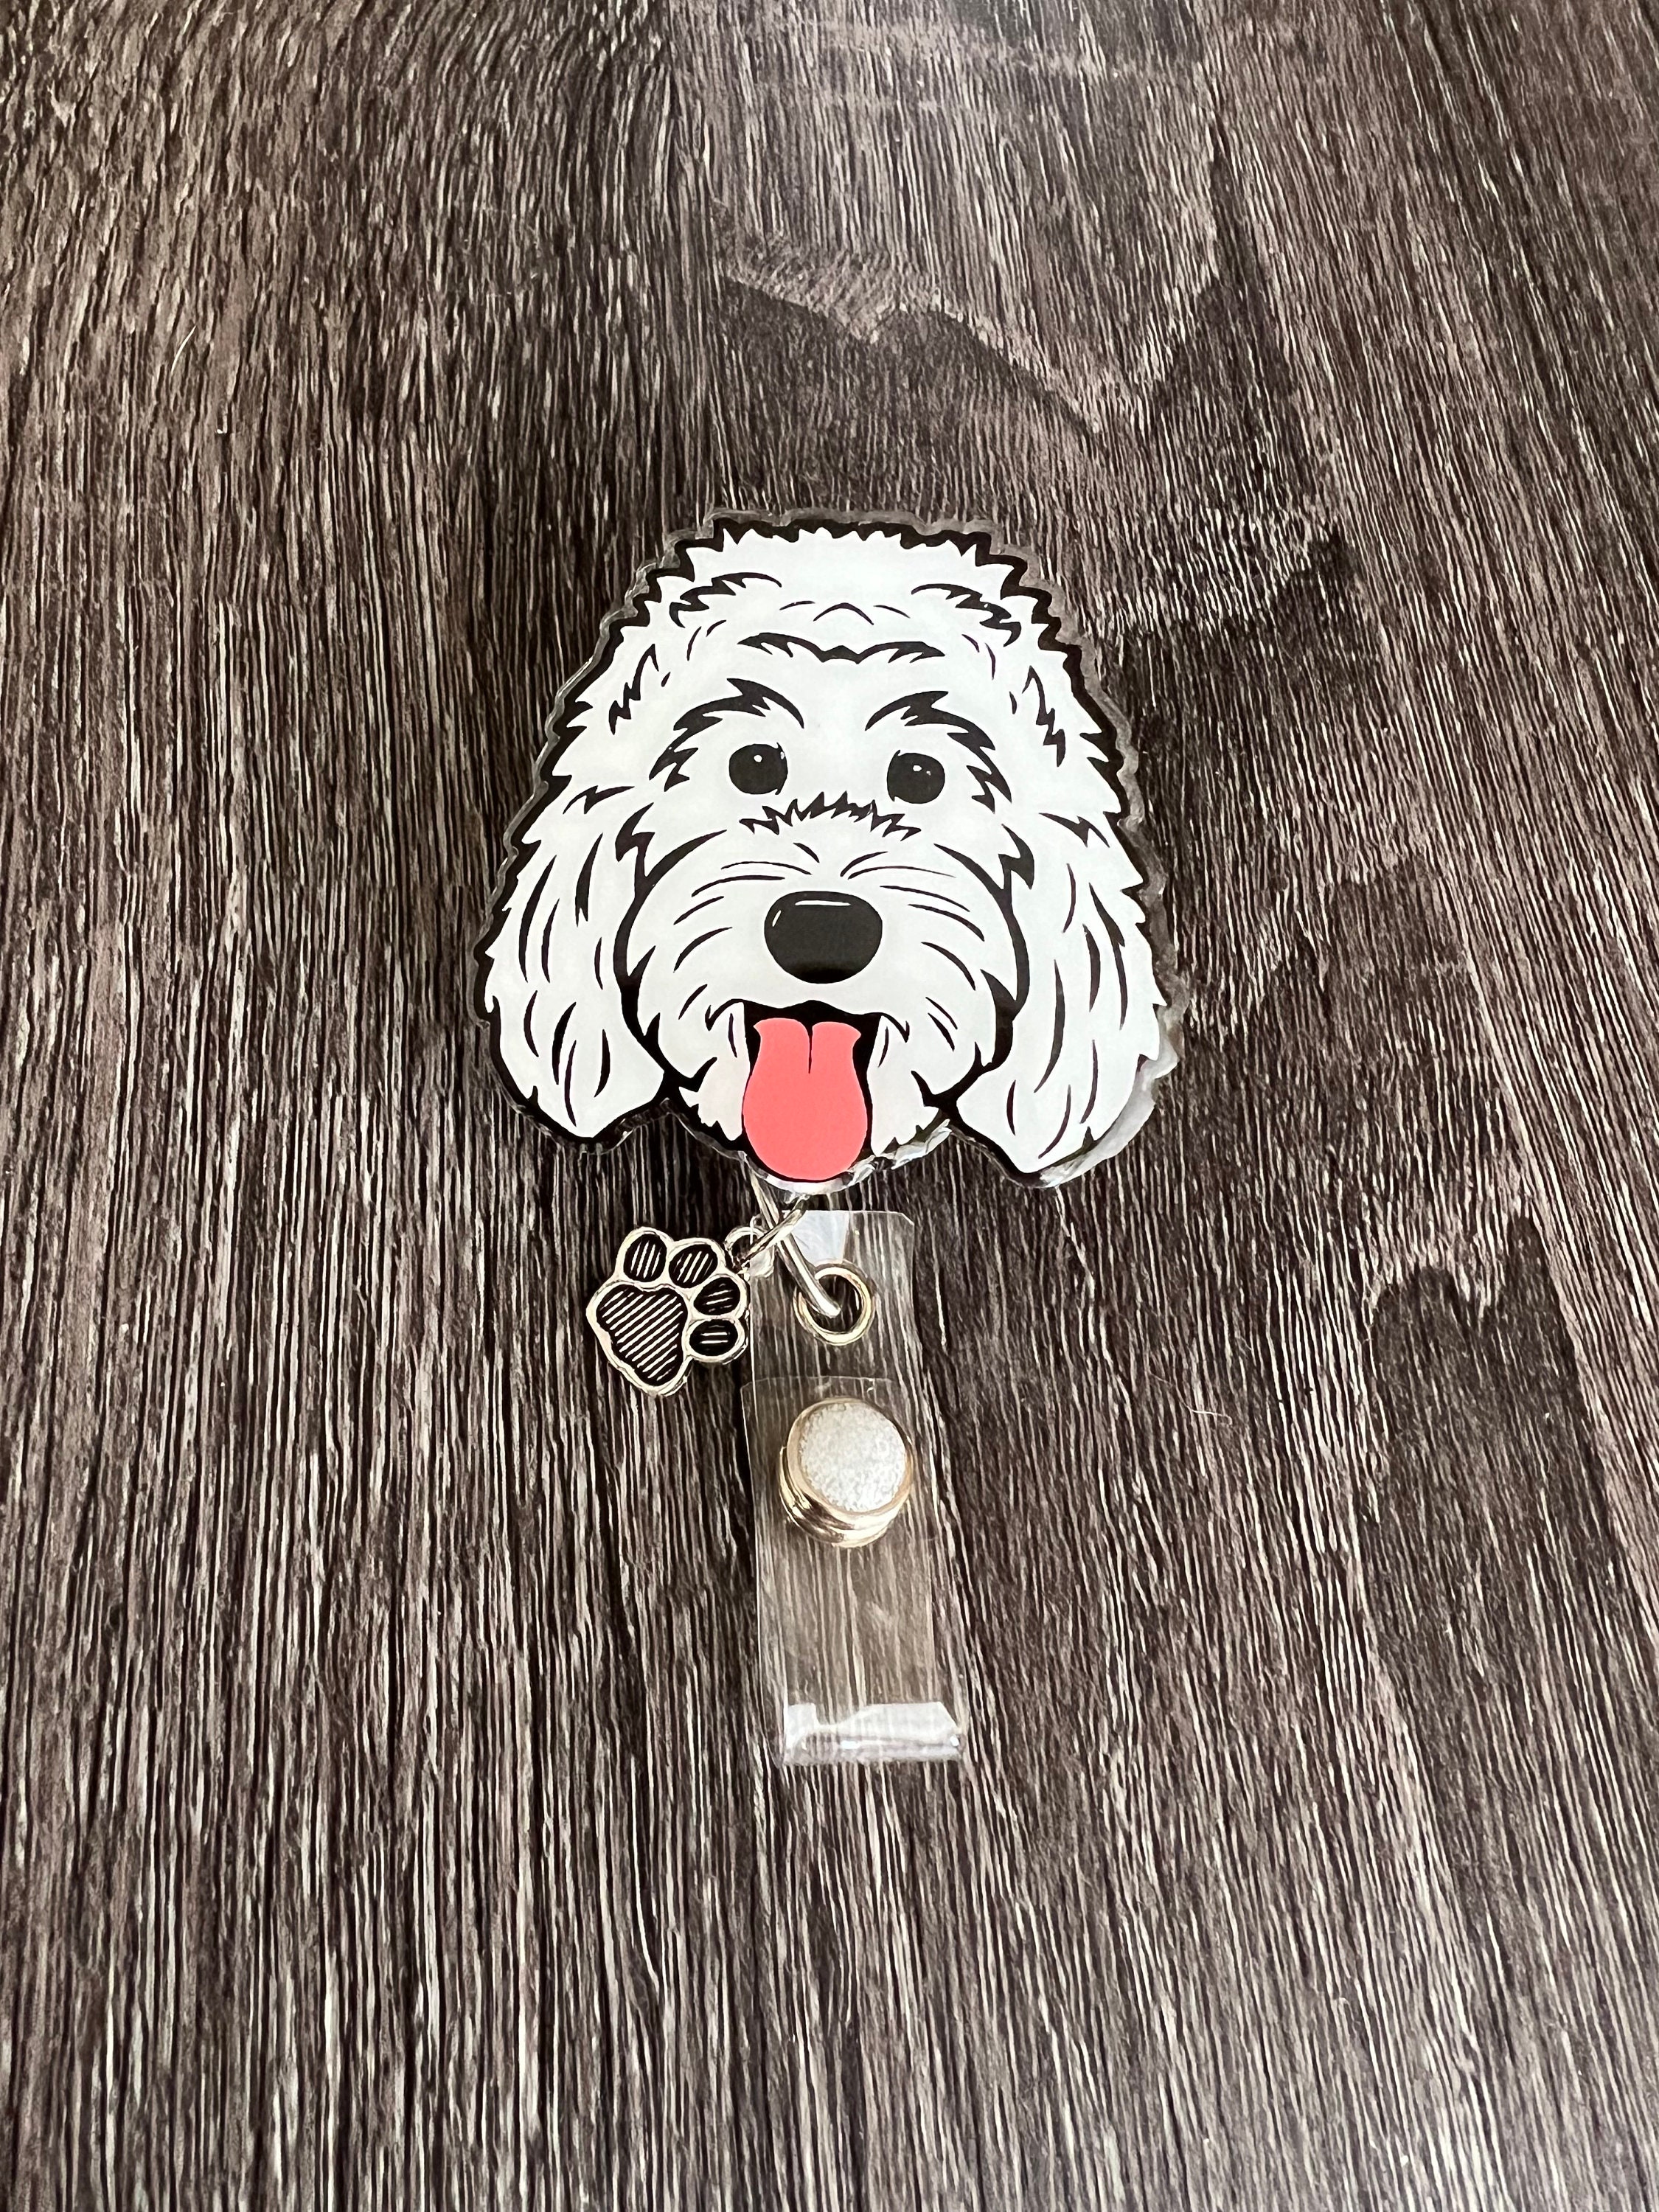 2 Acrylic White Doodle Dog Badge Reel/id Holder/card Holder/nurses